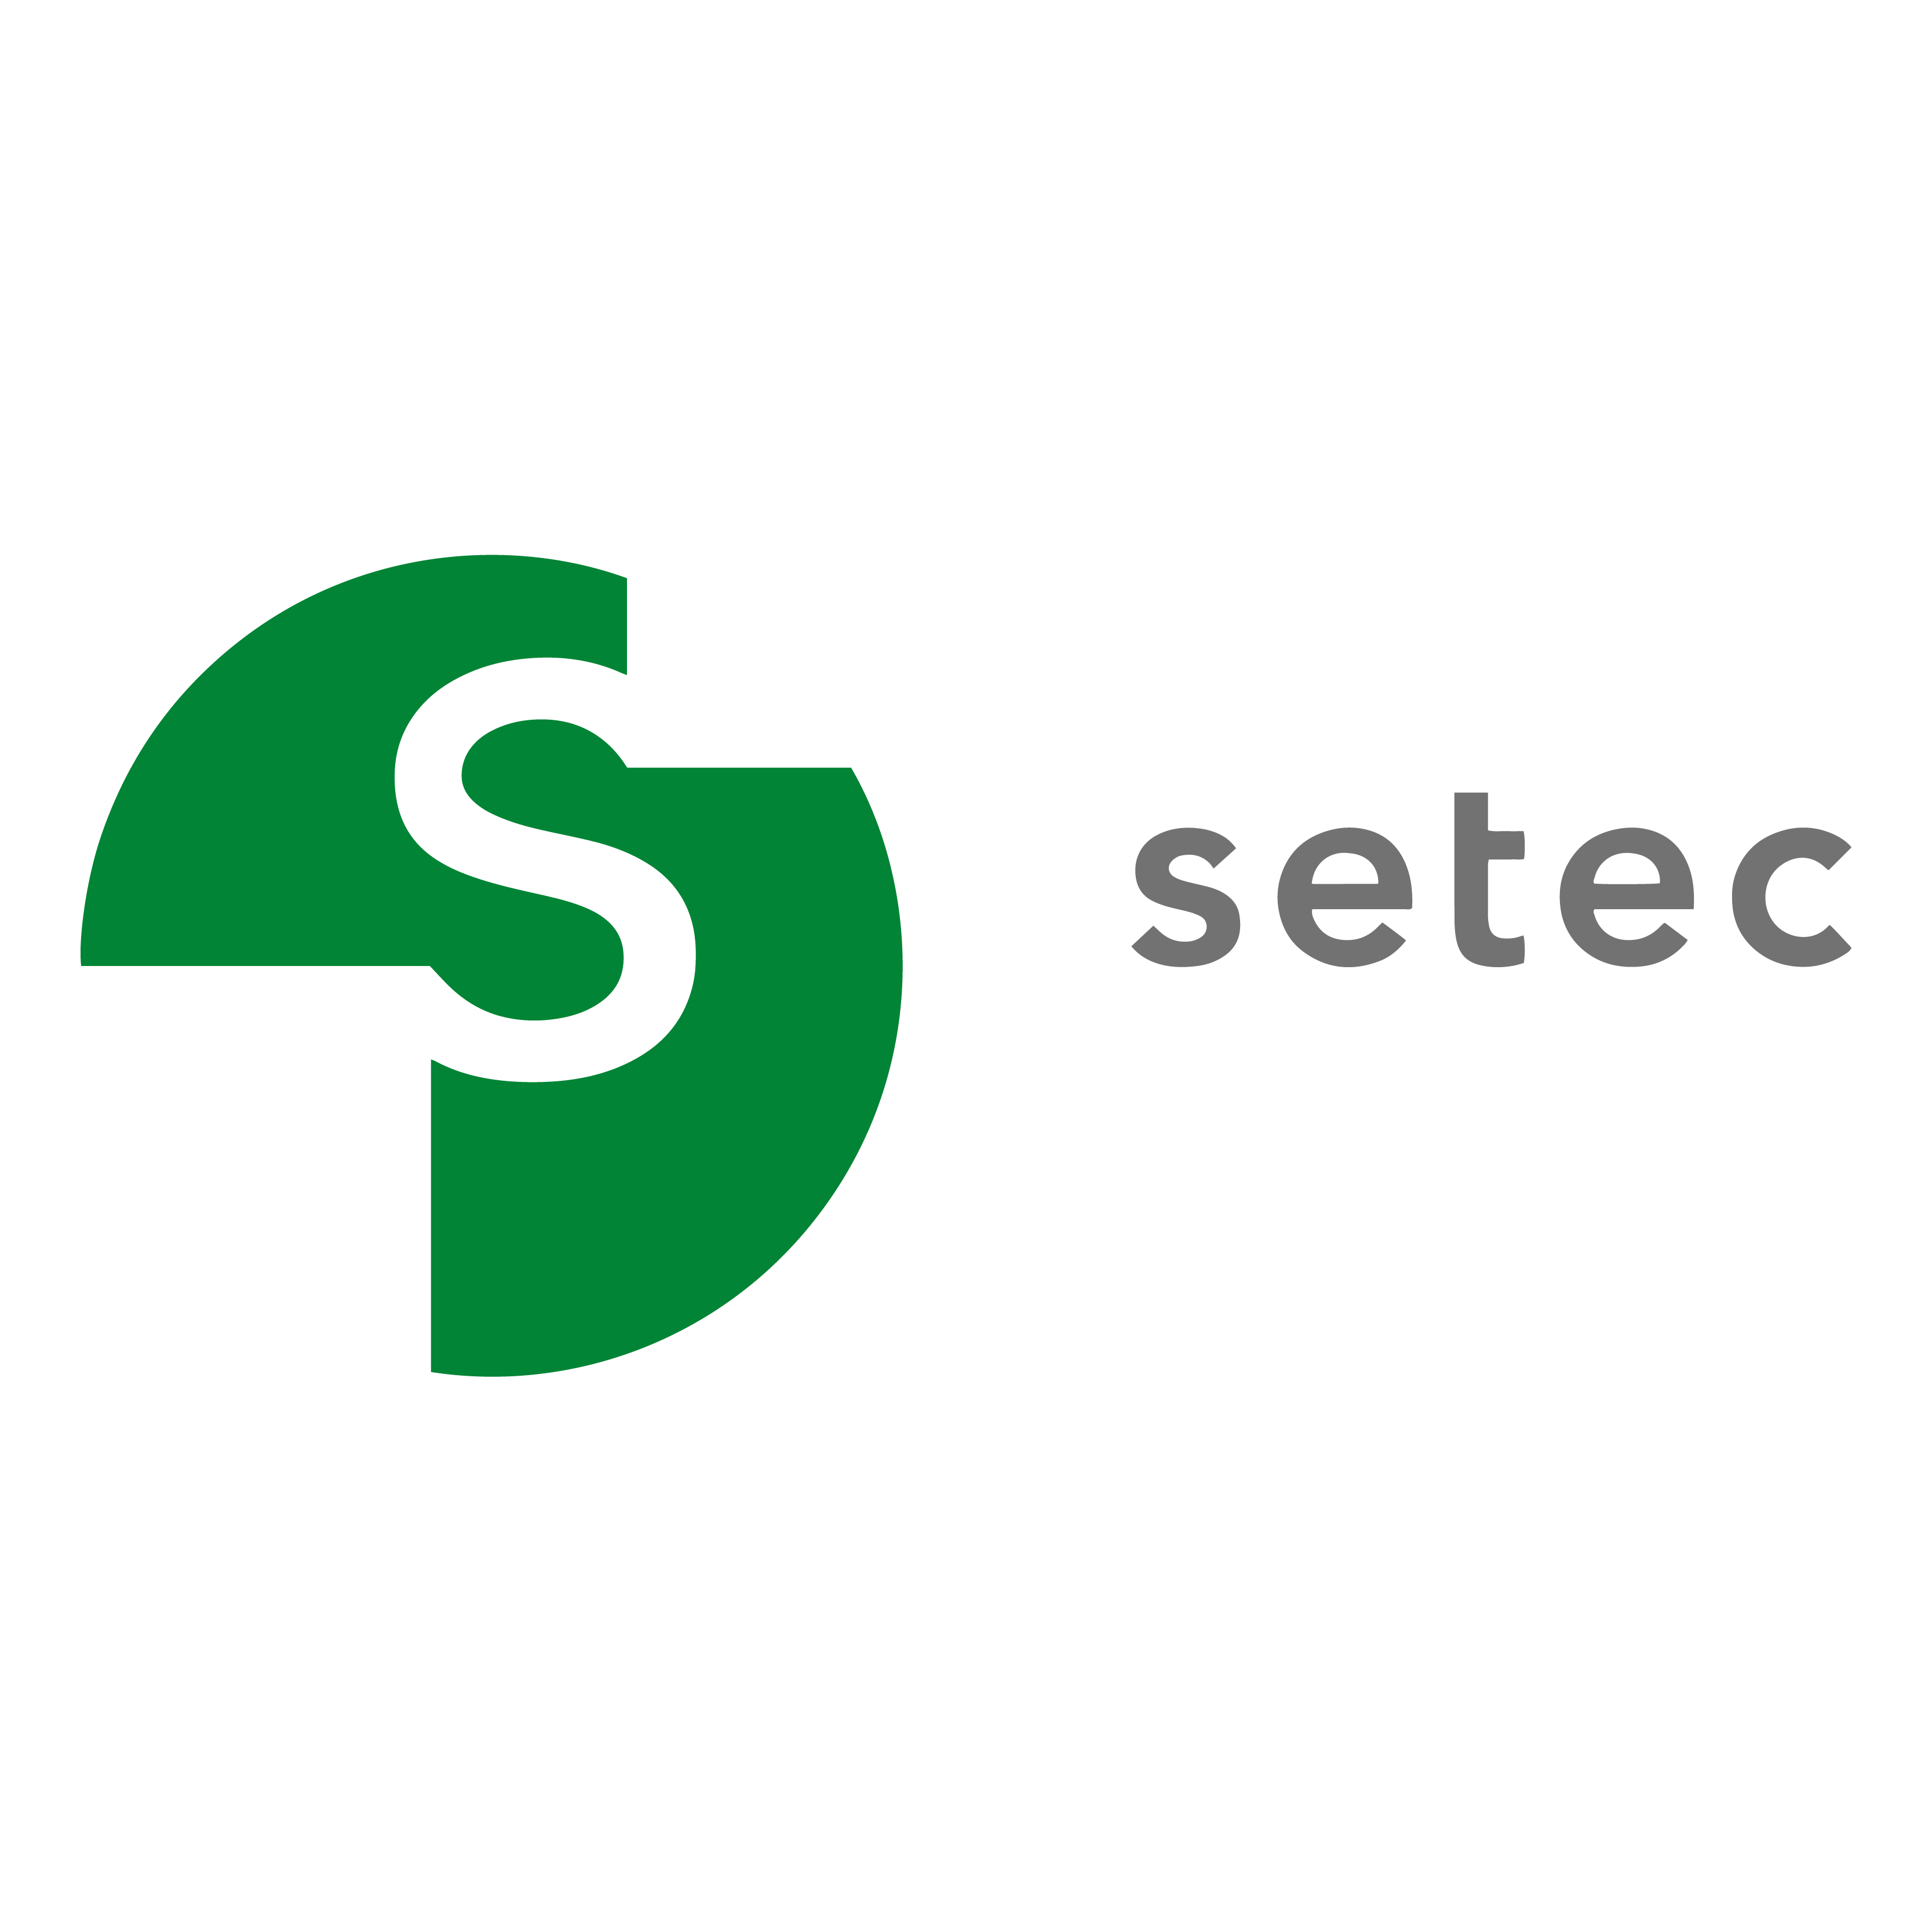 L'agenzia Cactix di Dubai, Dubai, United Arab Emirates ha aiutato Setec a far crescere il suo business con la SEO e il digital marketing